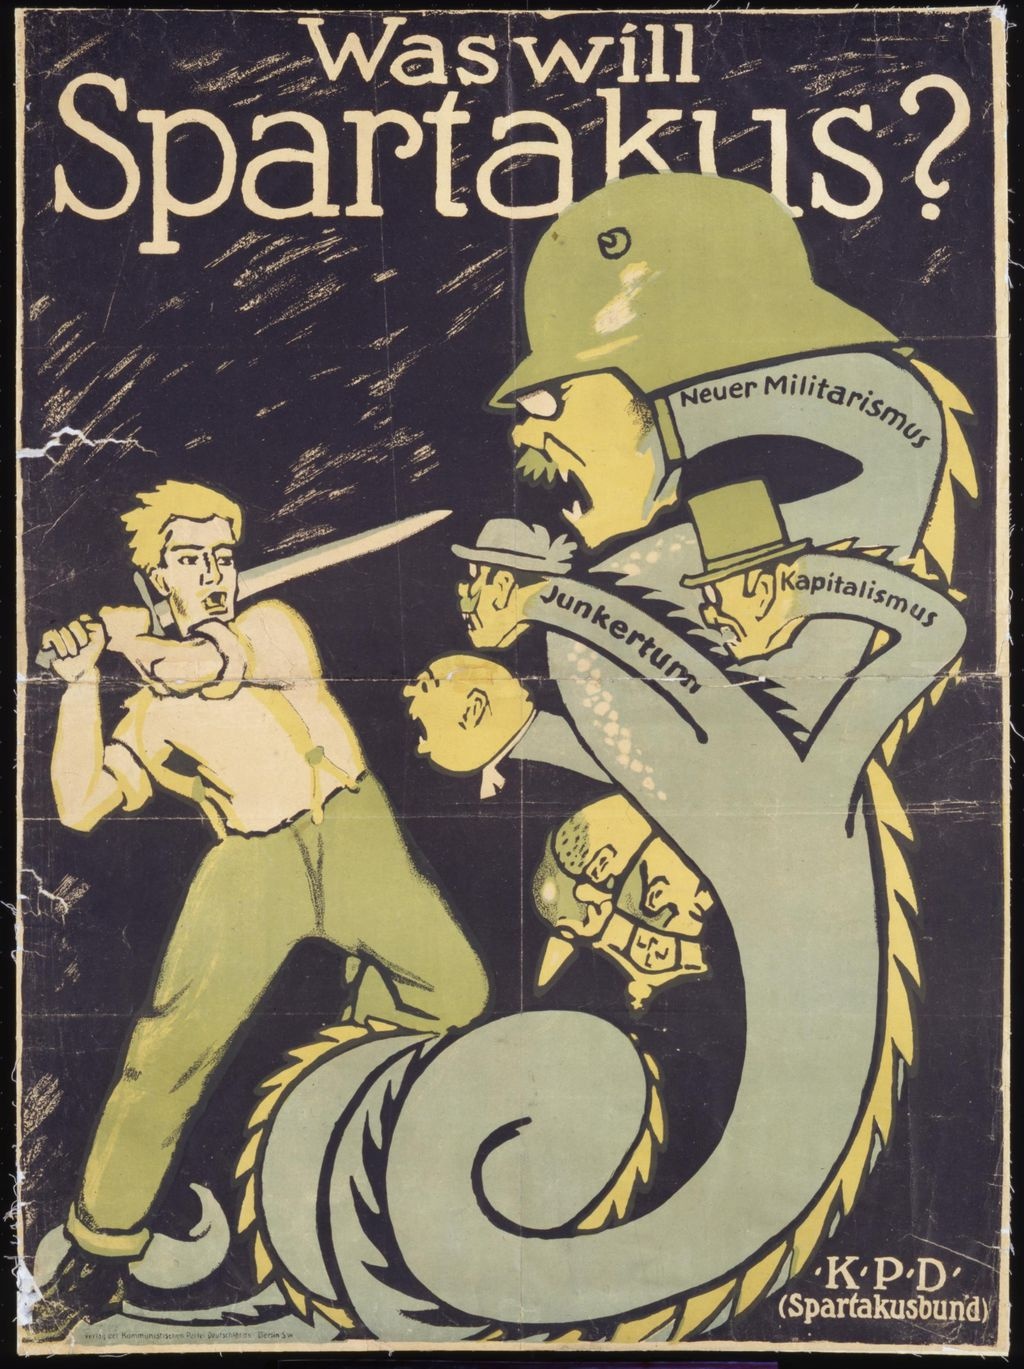 Spartakistaffisch från 1919. Hydrans huvuden står för lantadeln, kapita­lismen och ”den nya militarismen”.